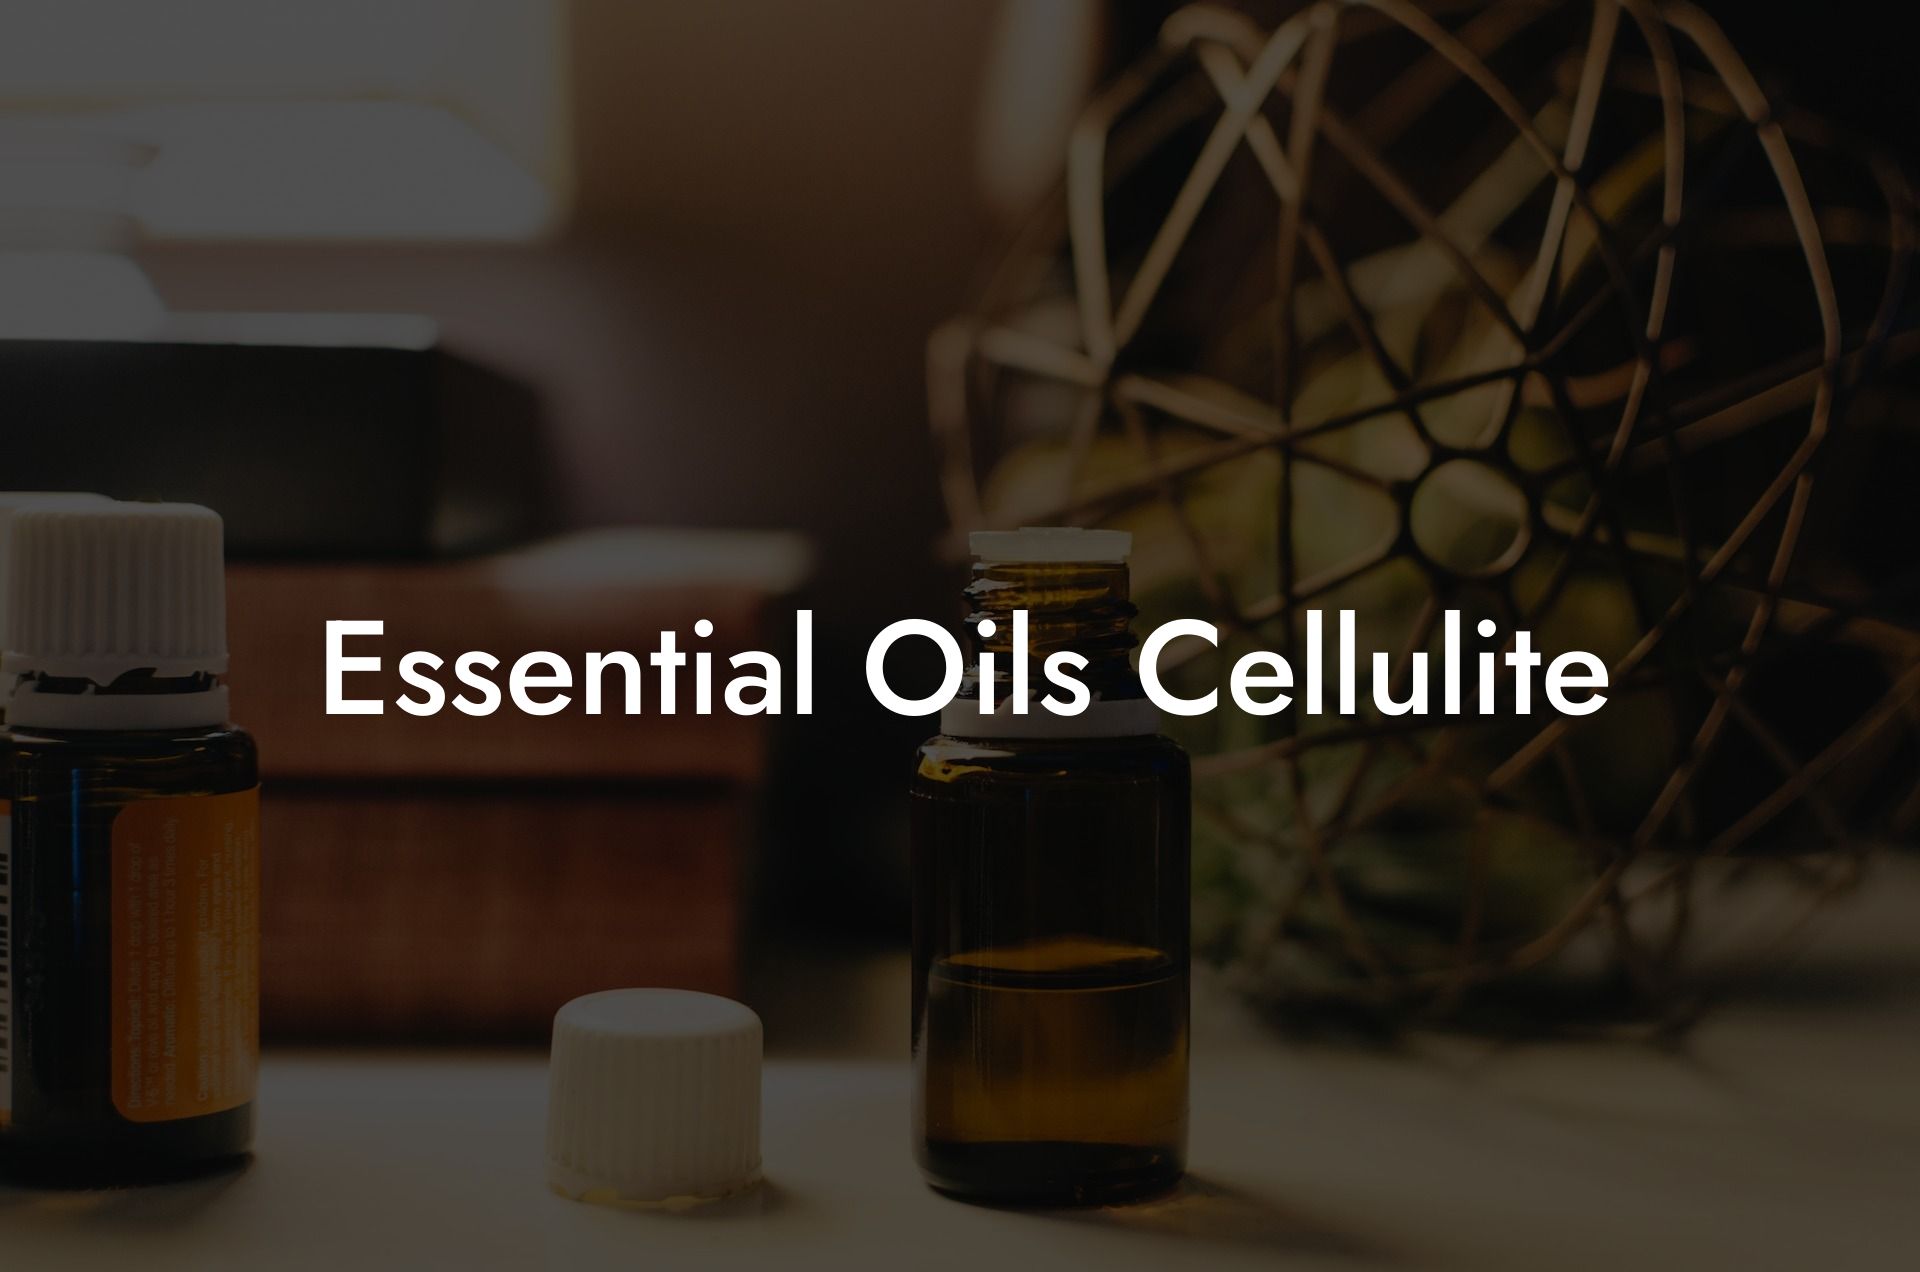 Essential Oils Cellulite